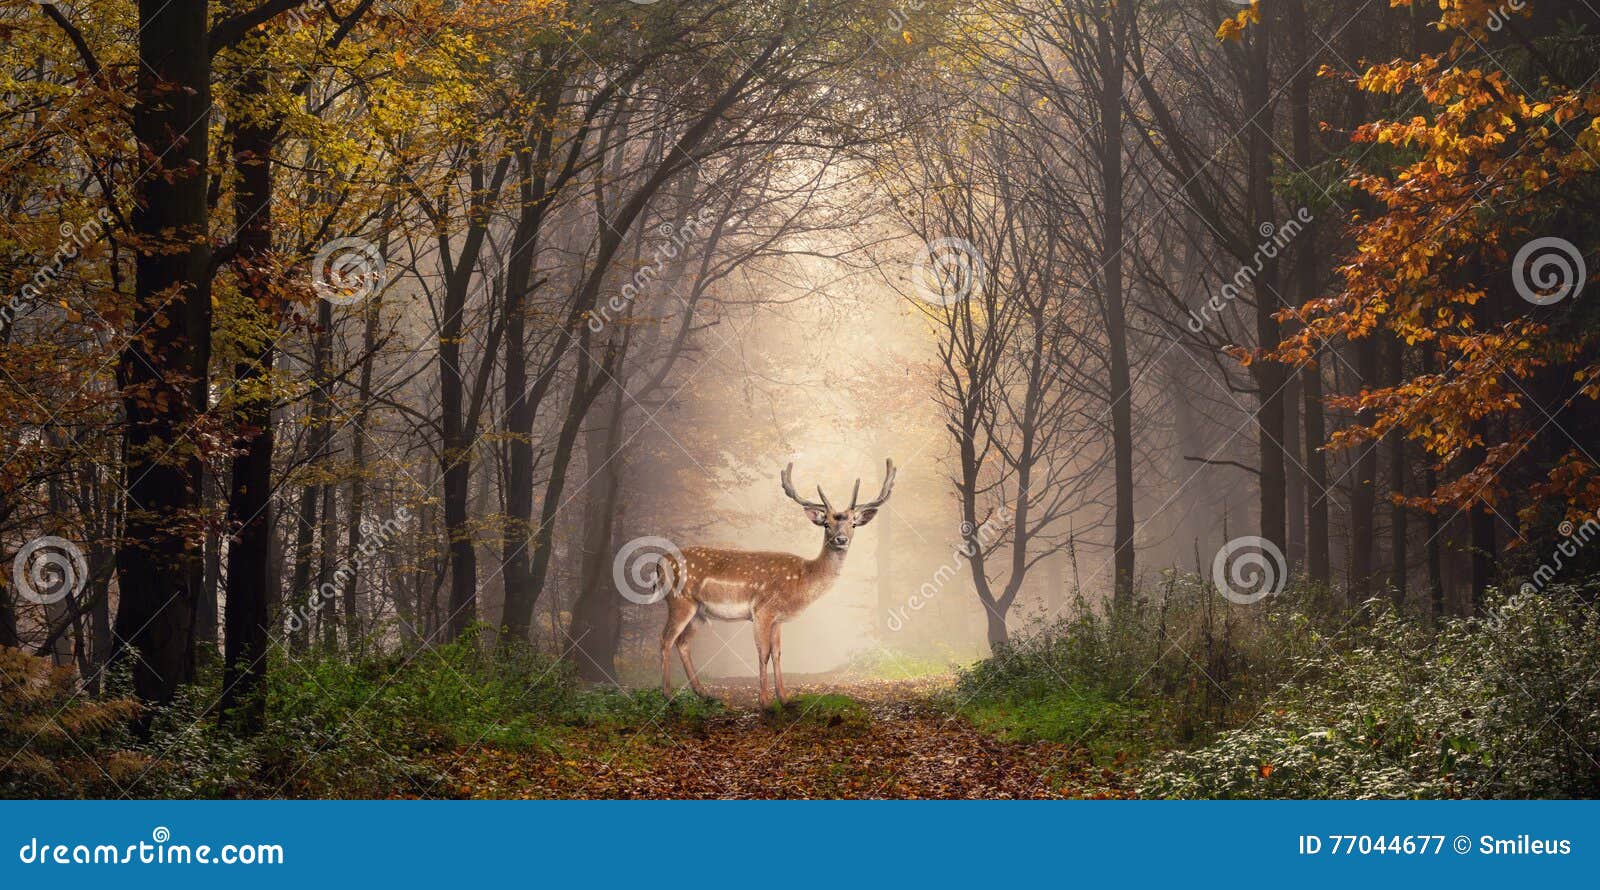 fallow deer in a dreamy forest scene